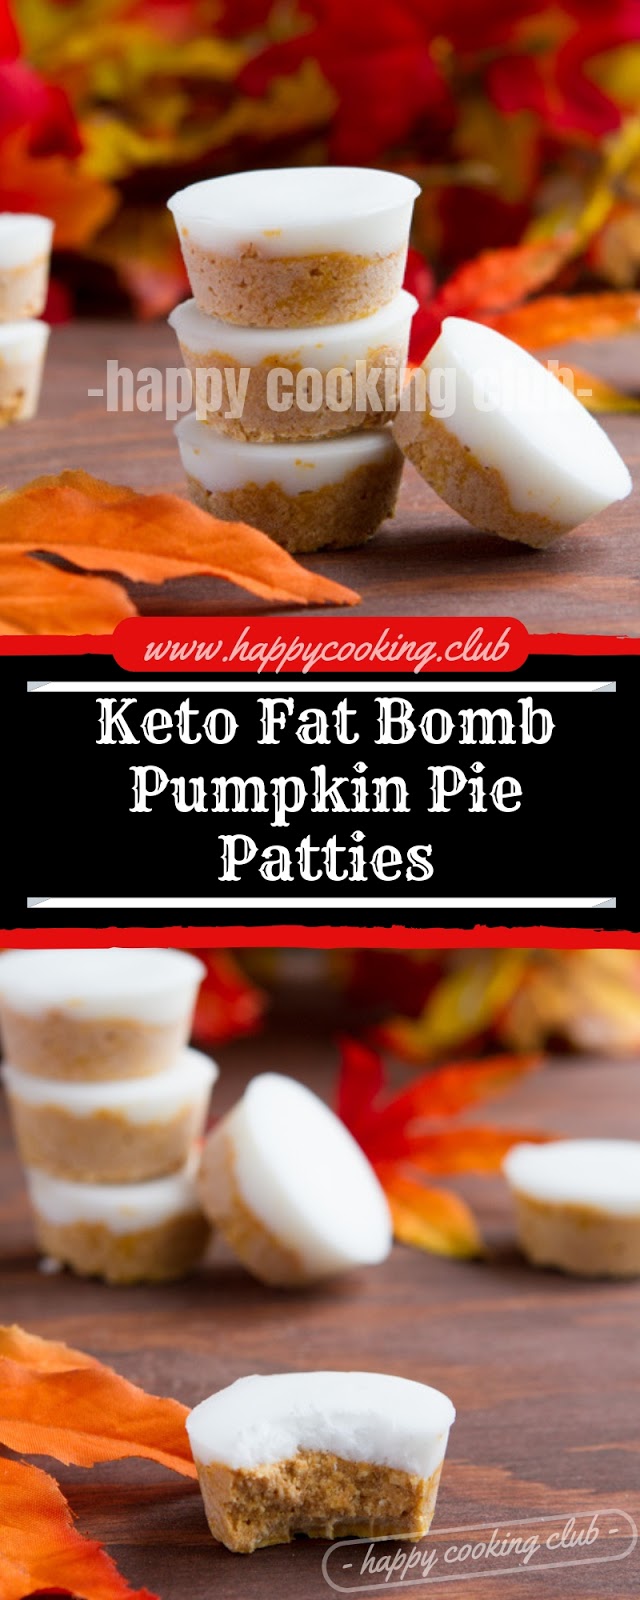 Keto Fat Bomb Pumpkin Pie Patties